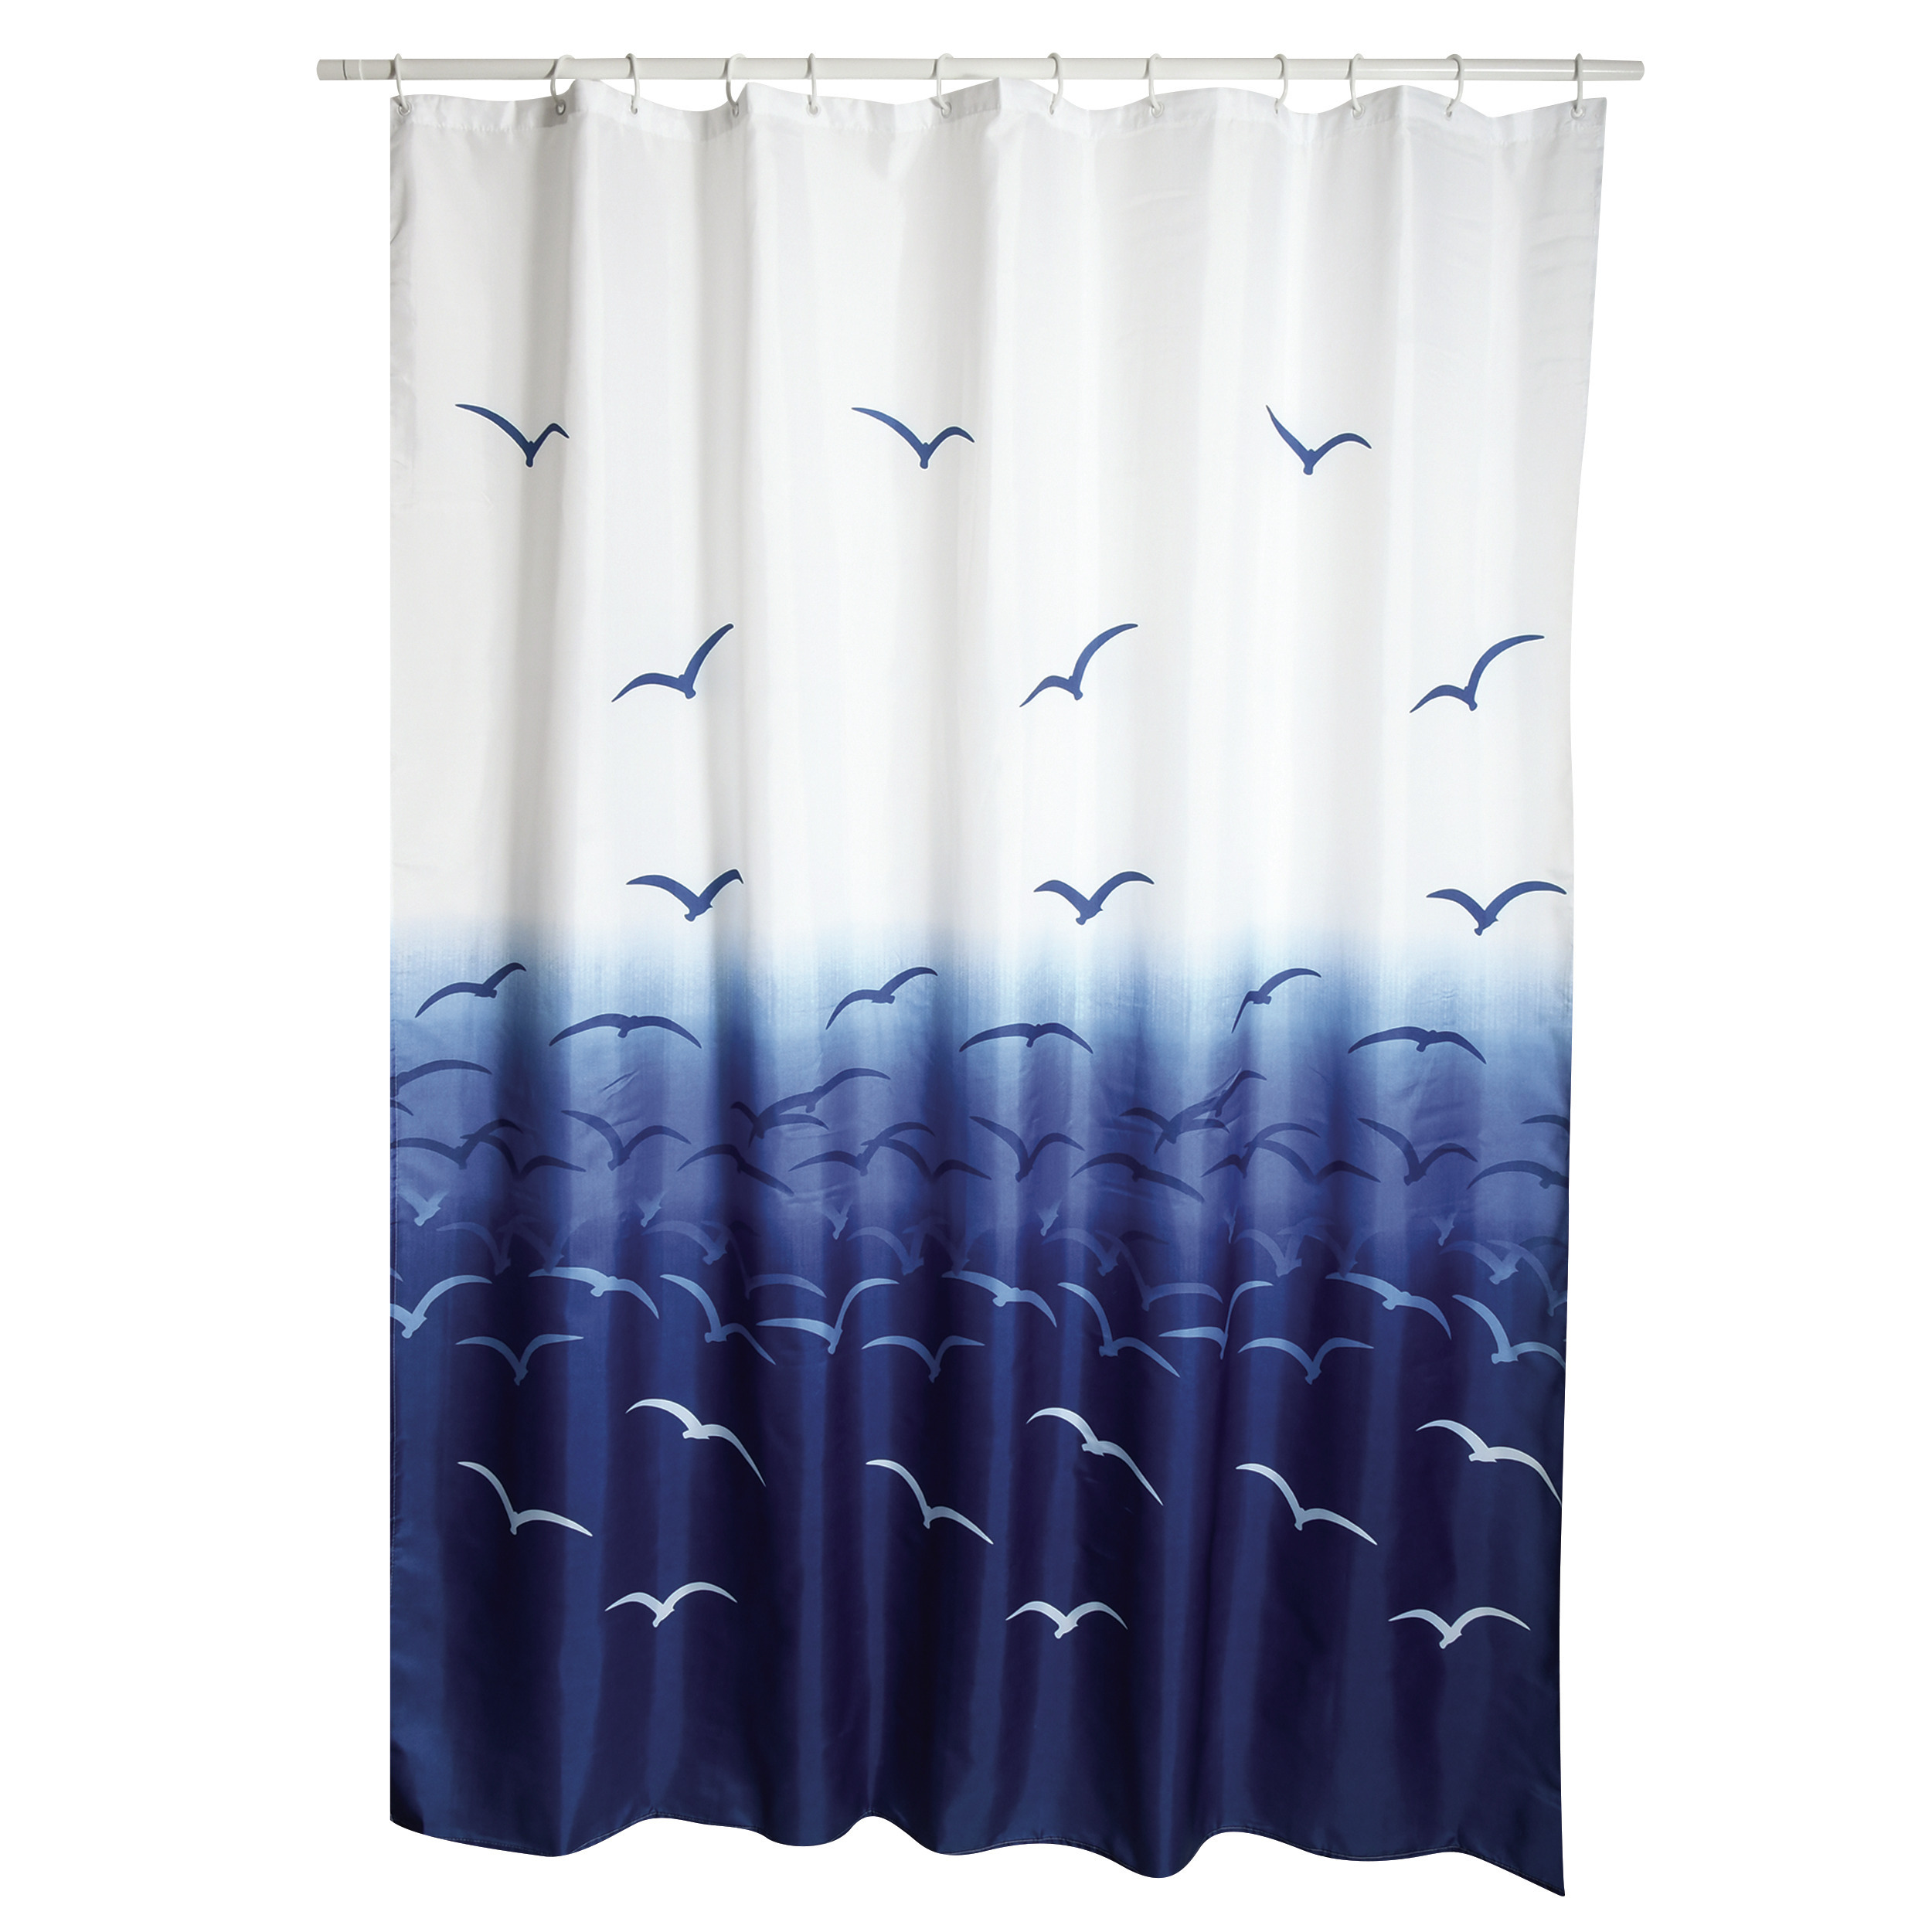 Douchegordijn wit-blauw vogels print Polyester 180 x 200 cm wasbaar